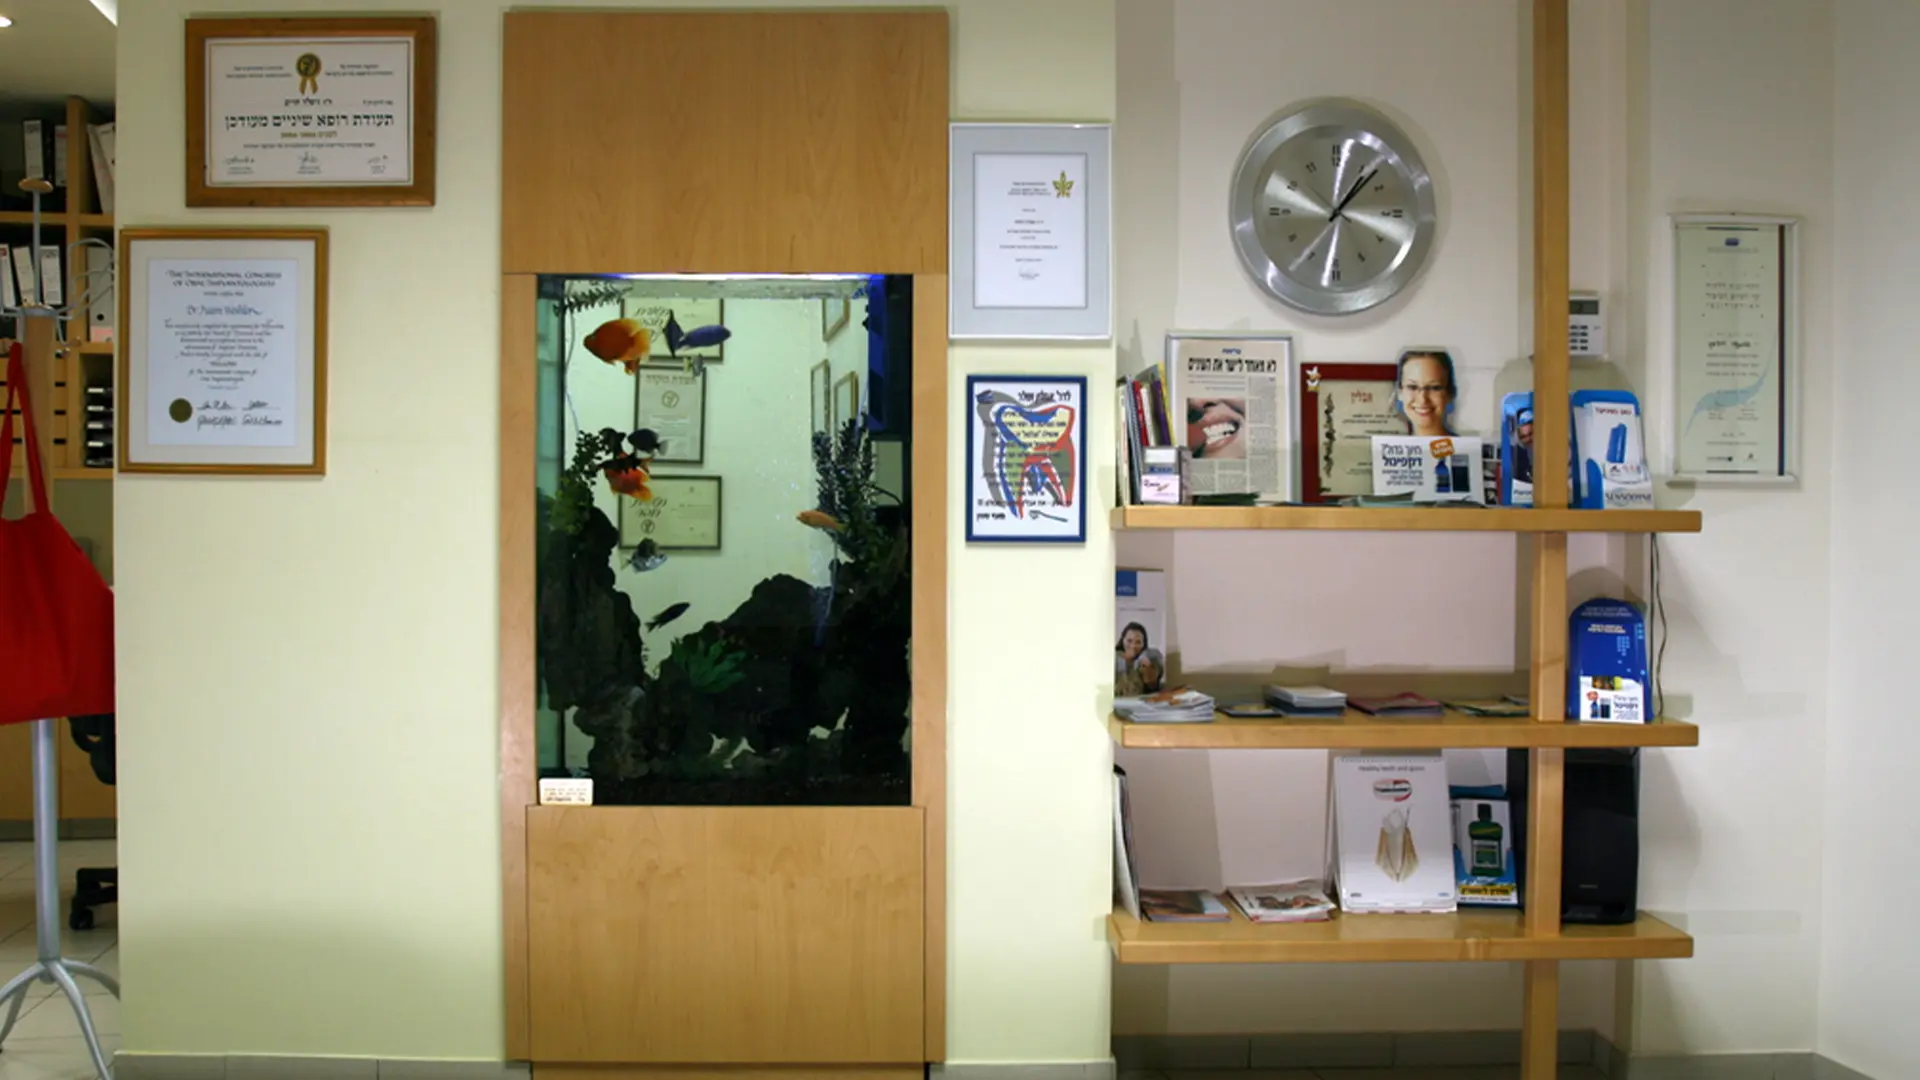 צילום של האקווריום בתוך הקיר בחדר המתנה, מעבר לאקווריום אפשר לראות חדר נוסף